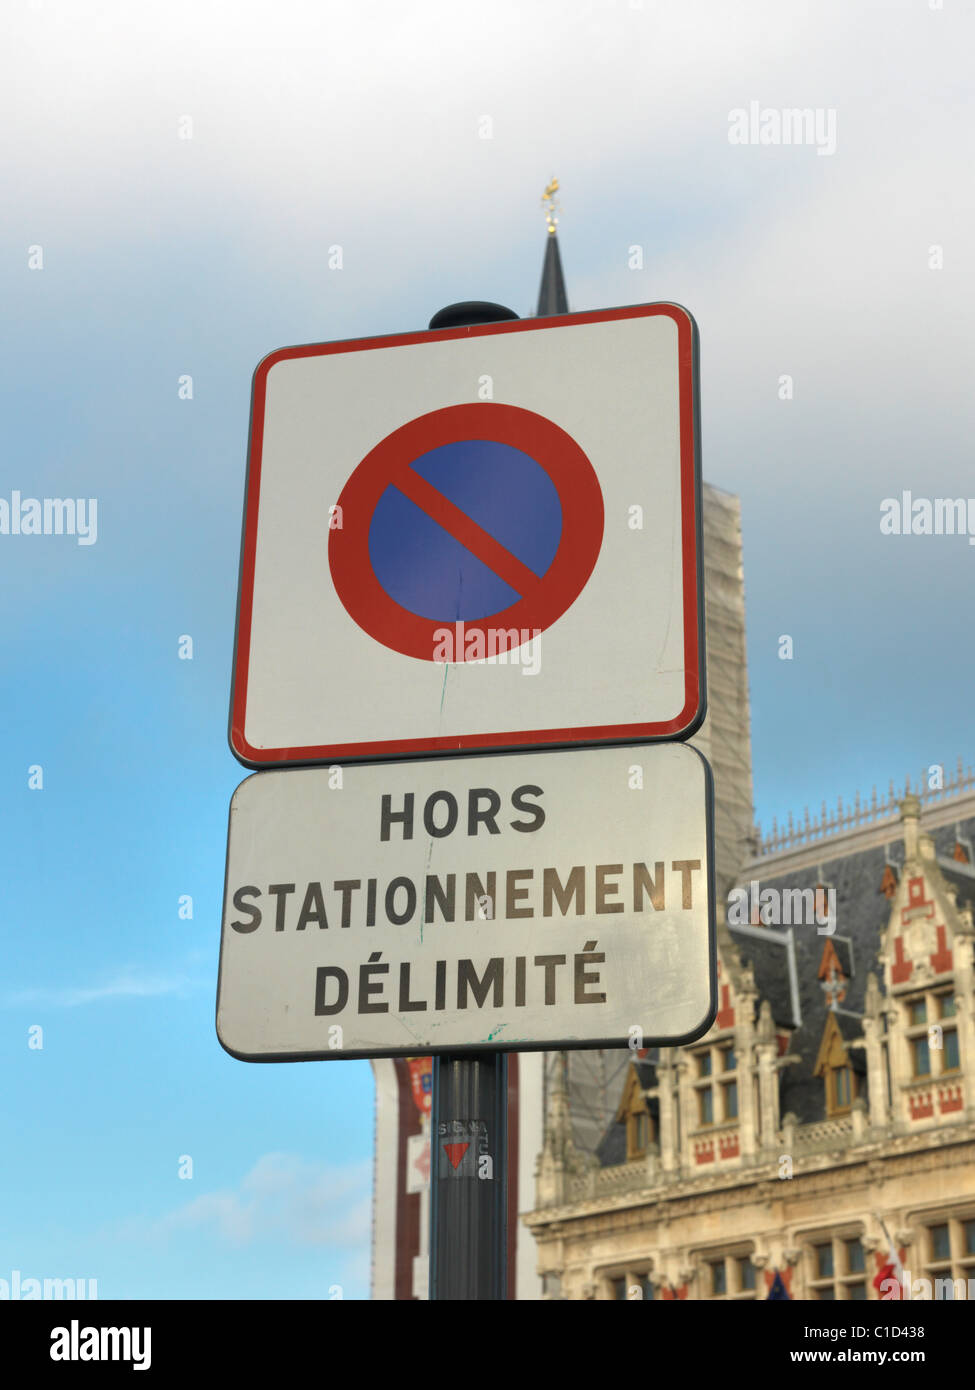 Calais Frankreich Zeichen Hors Stationnement Delimite (unbegrenzte Zeit anhalten) Stockfoto